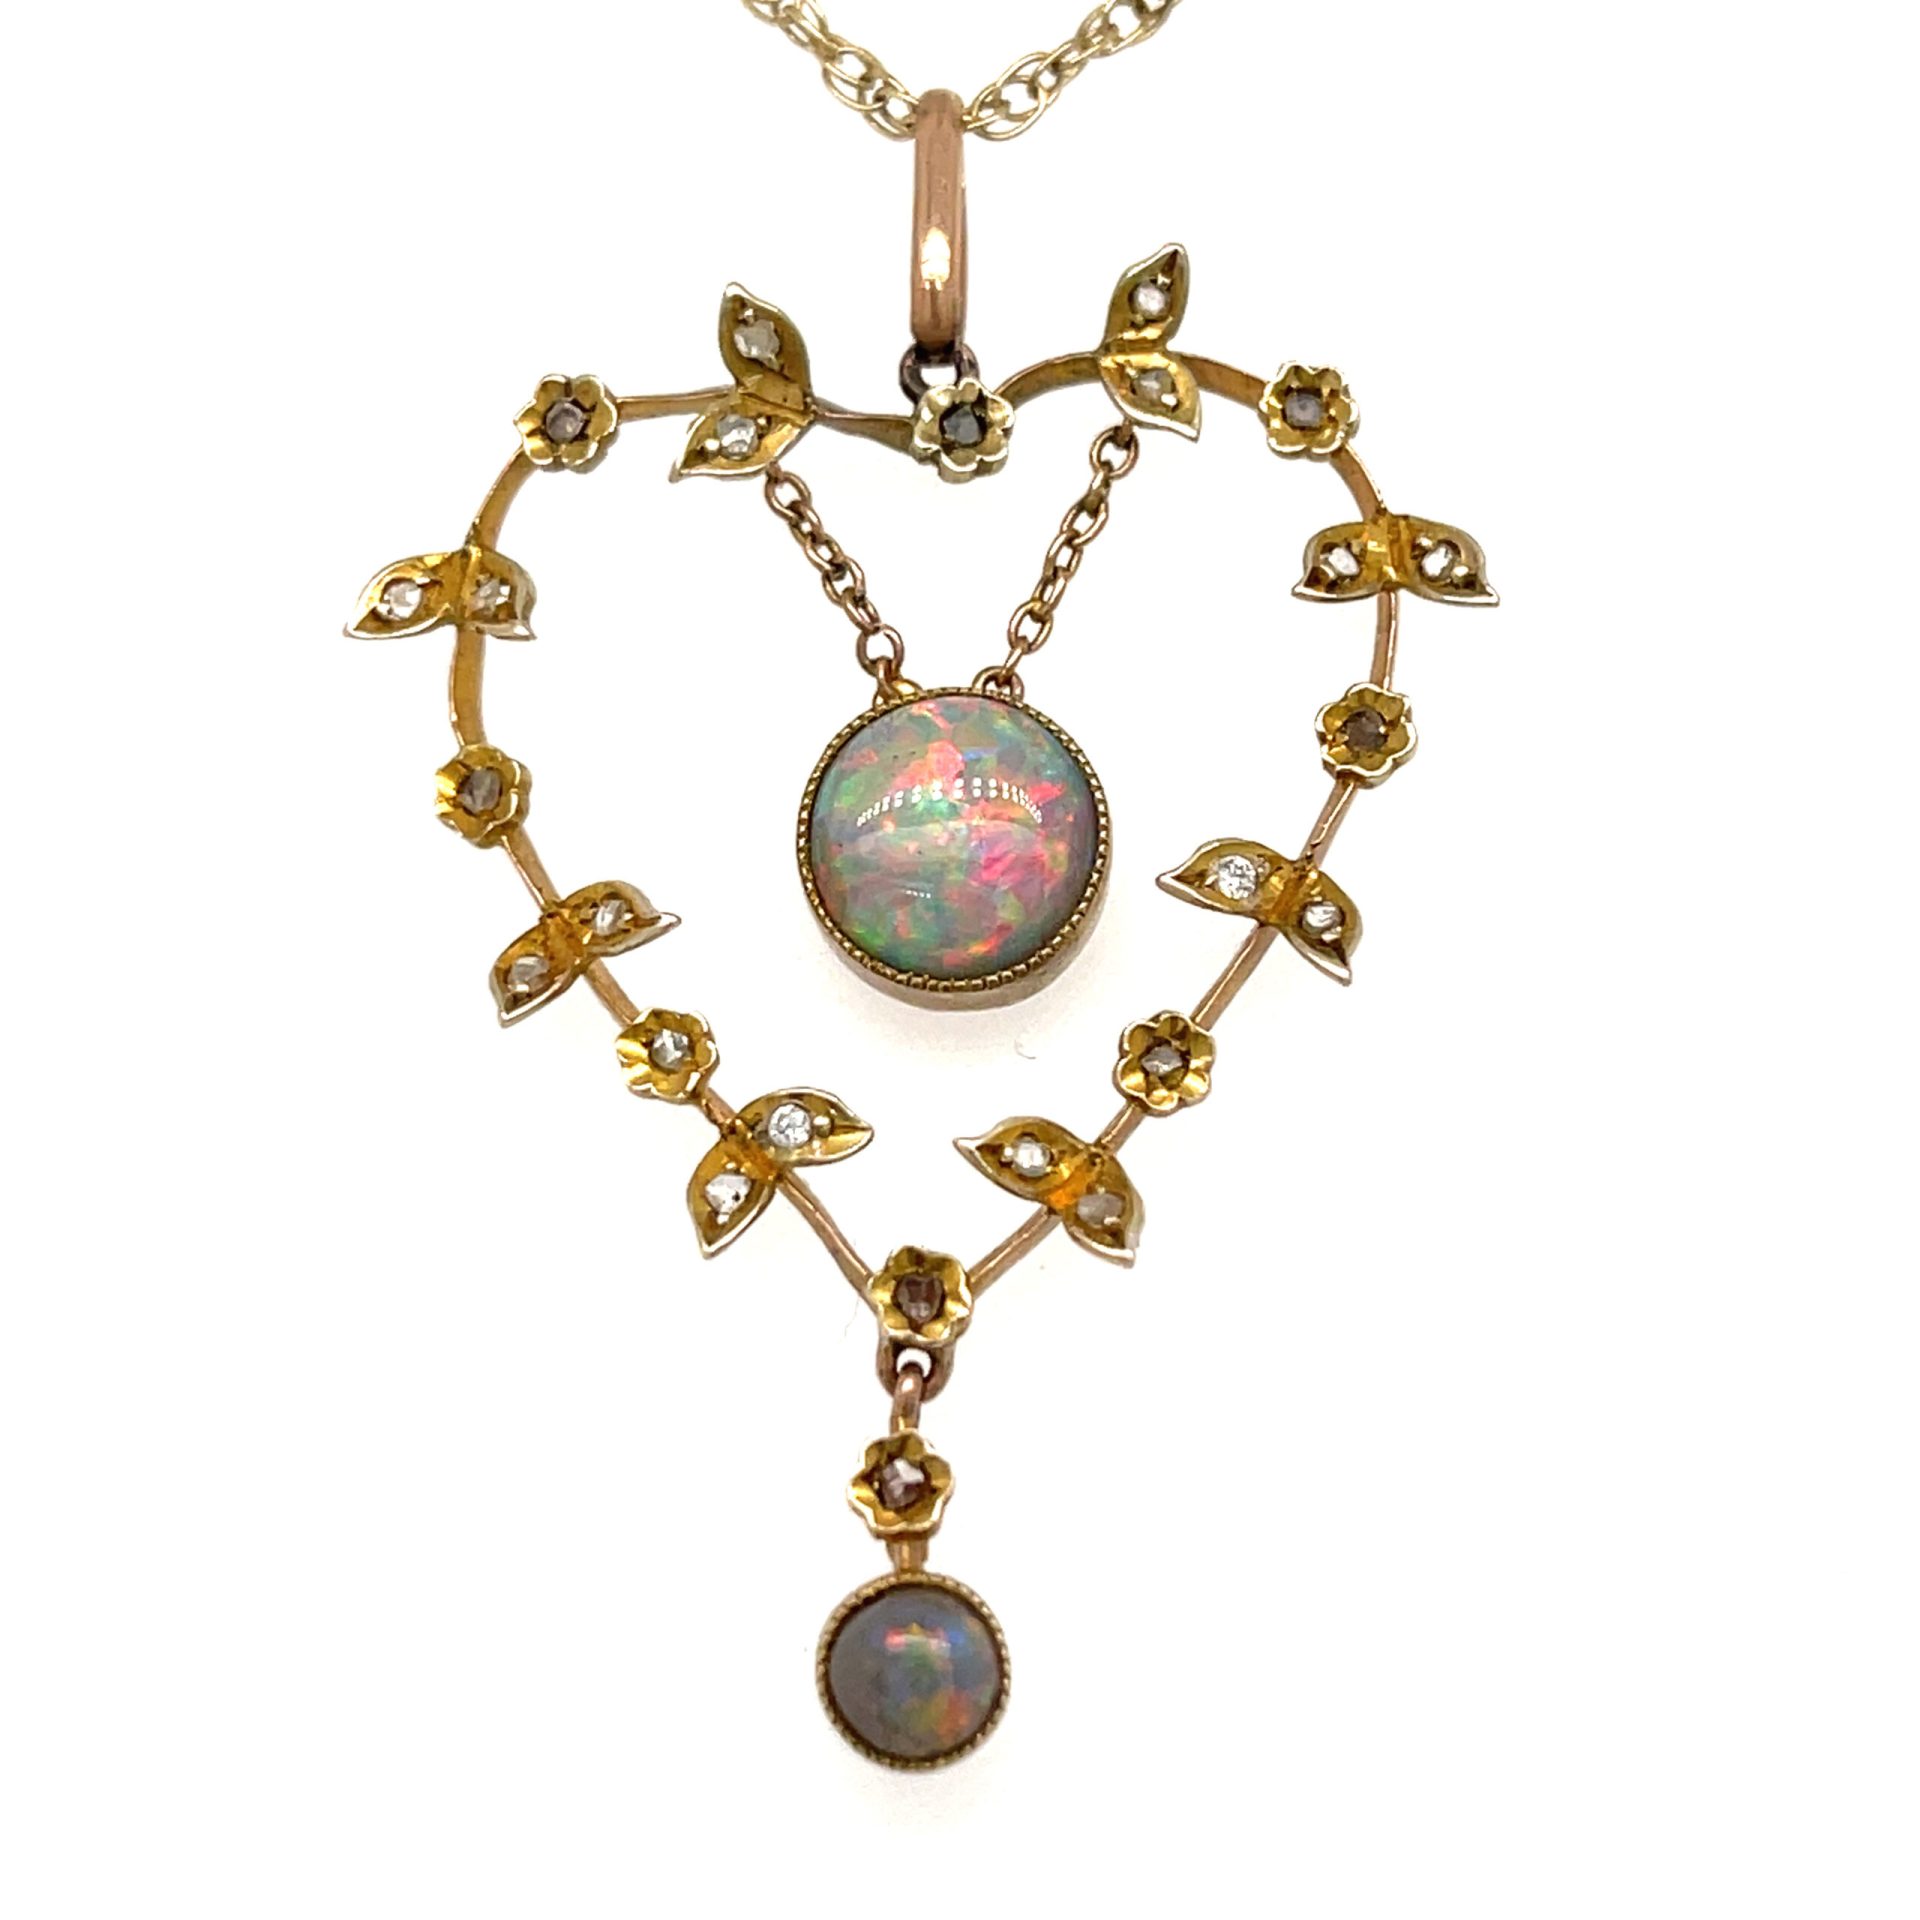 vintage floating opal pendant | eBay